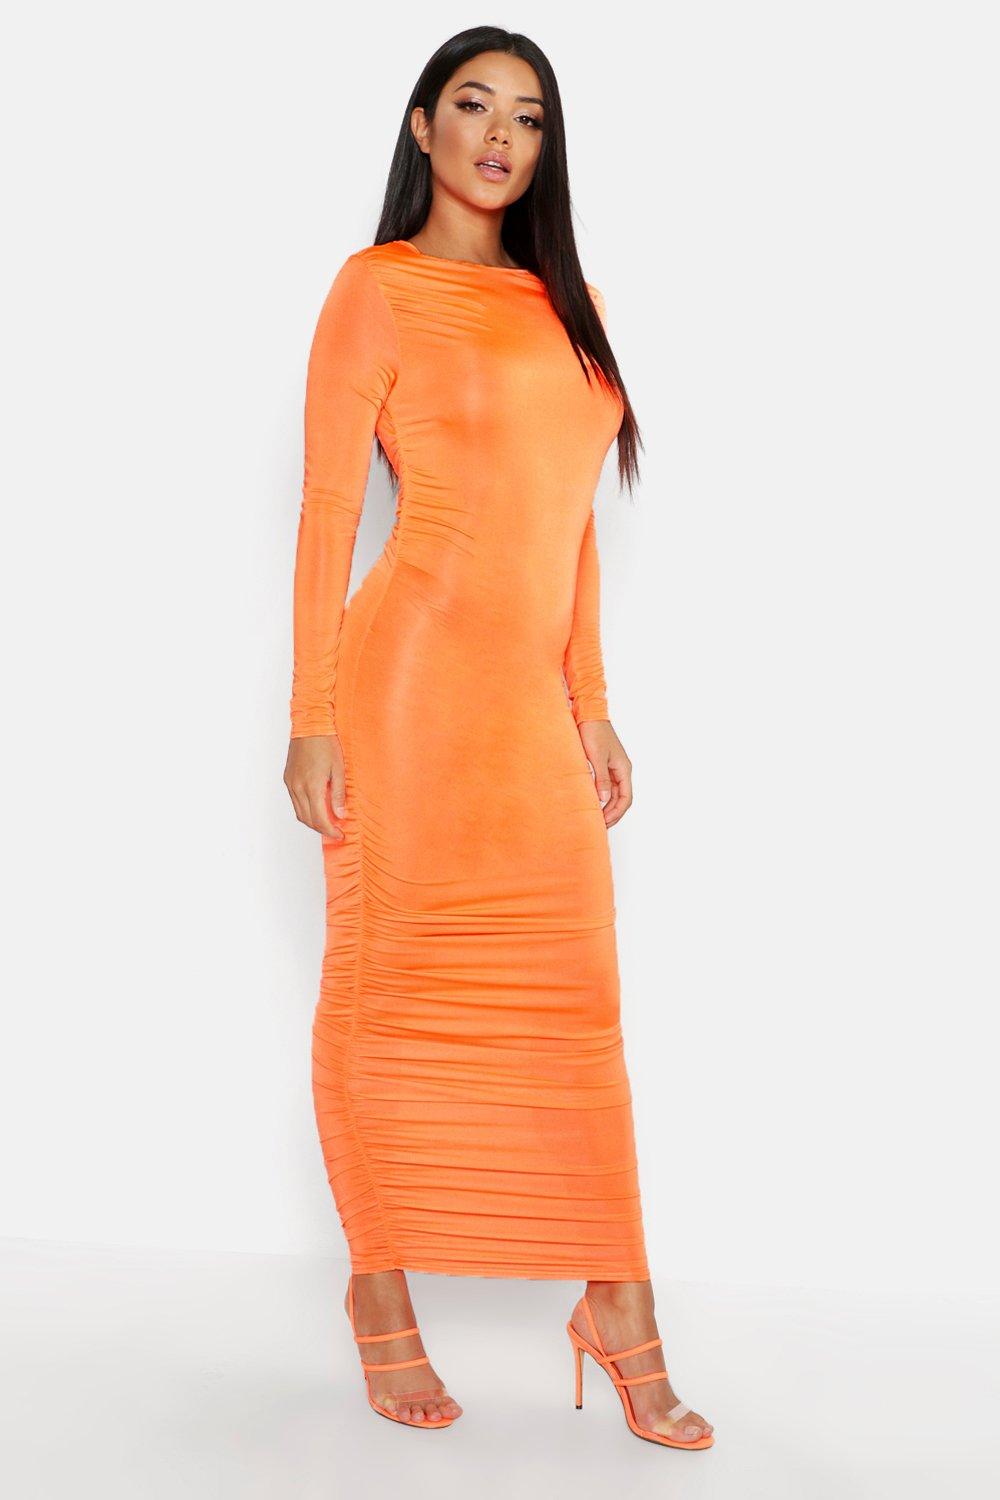 neon orange ruched dress